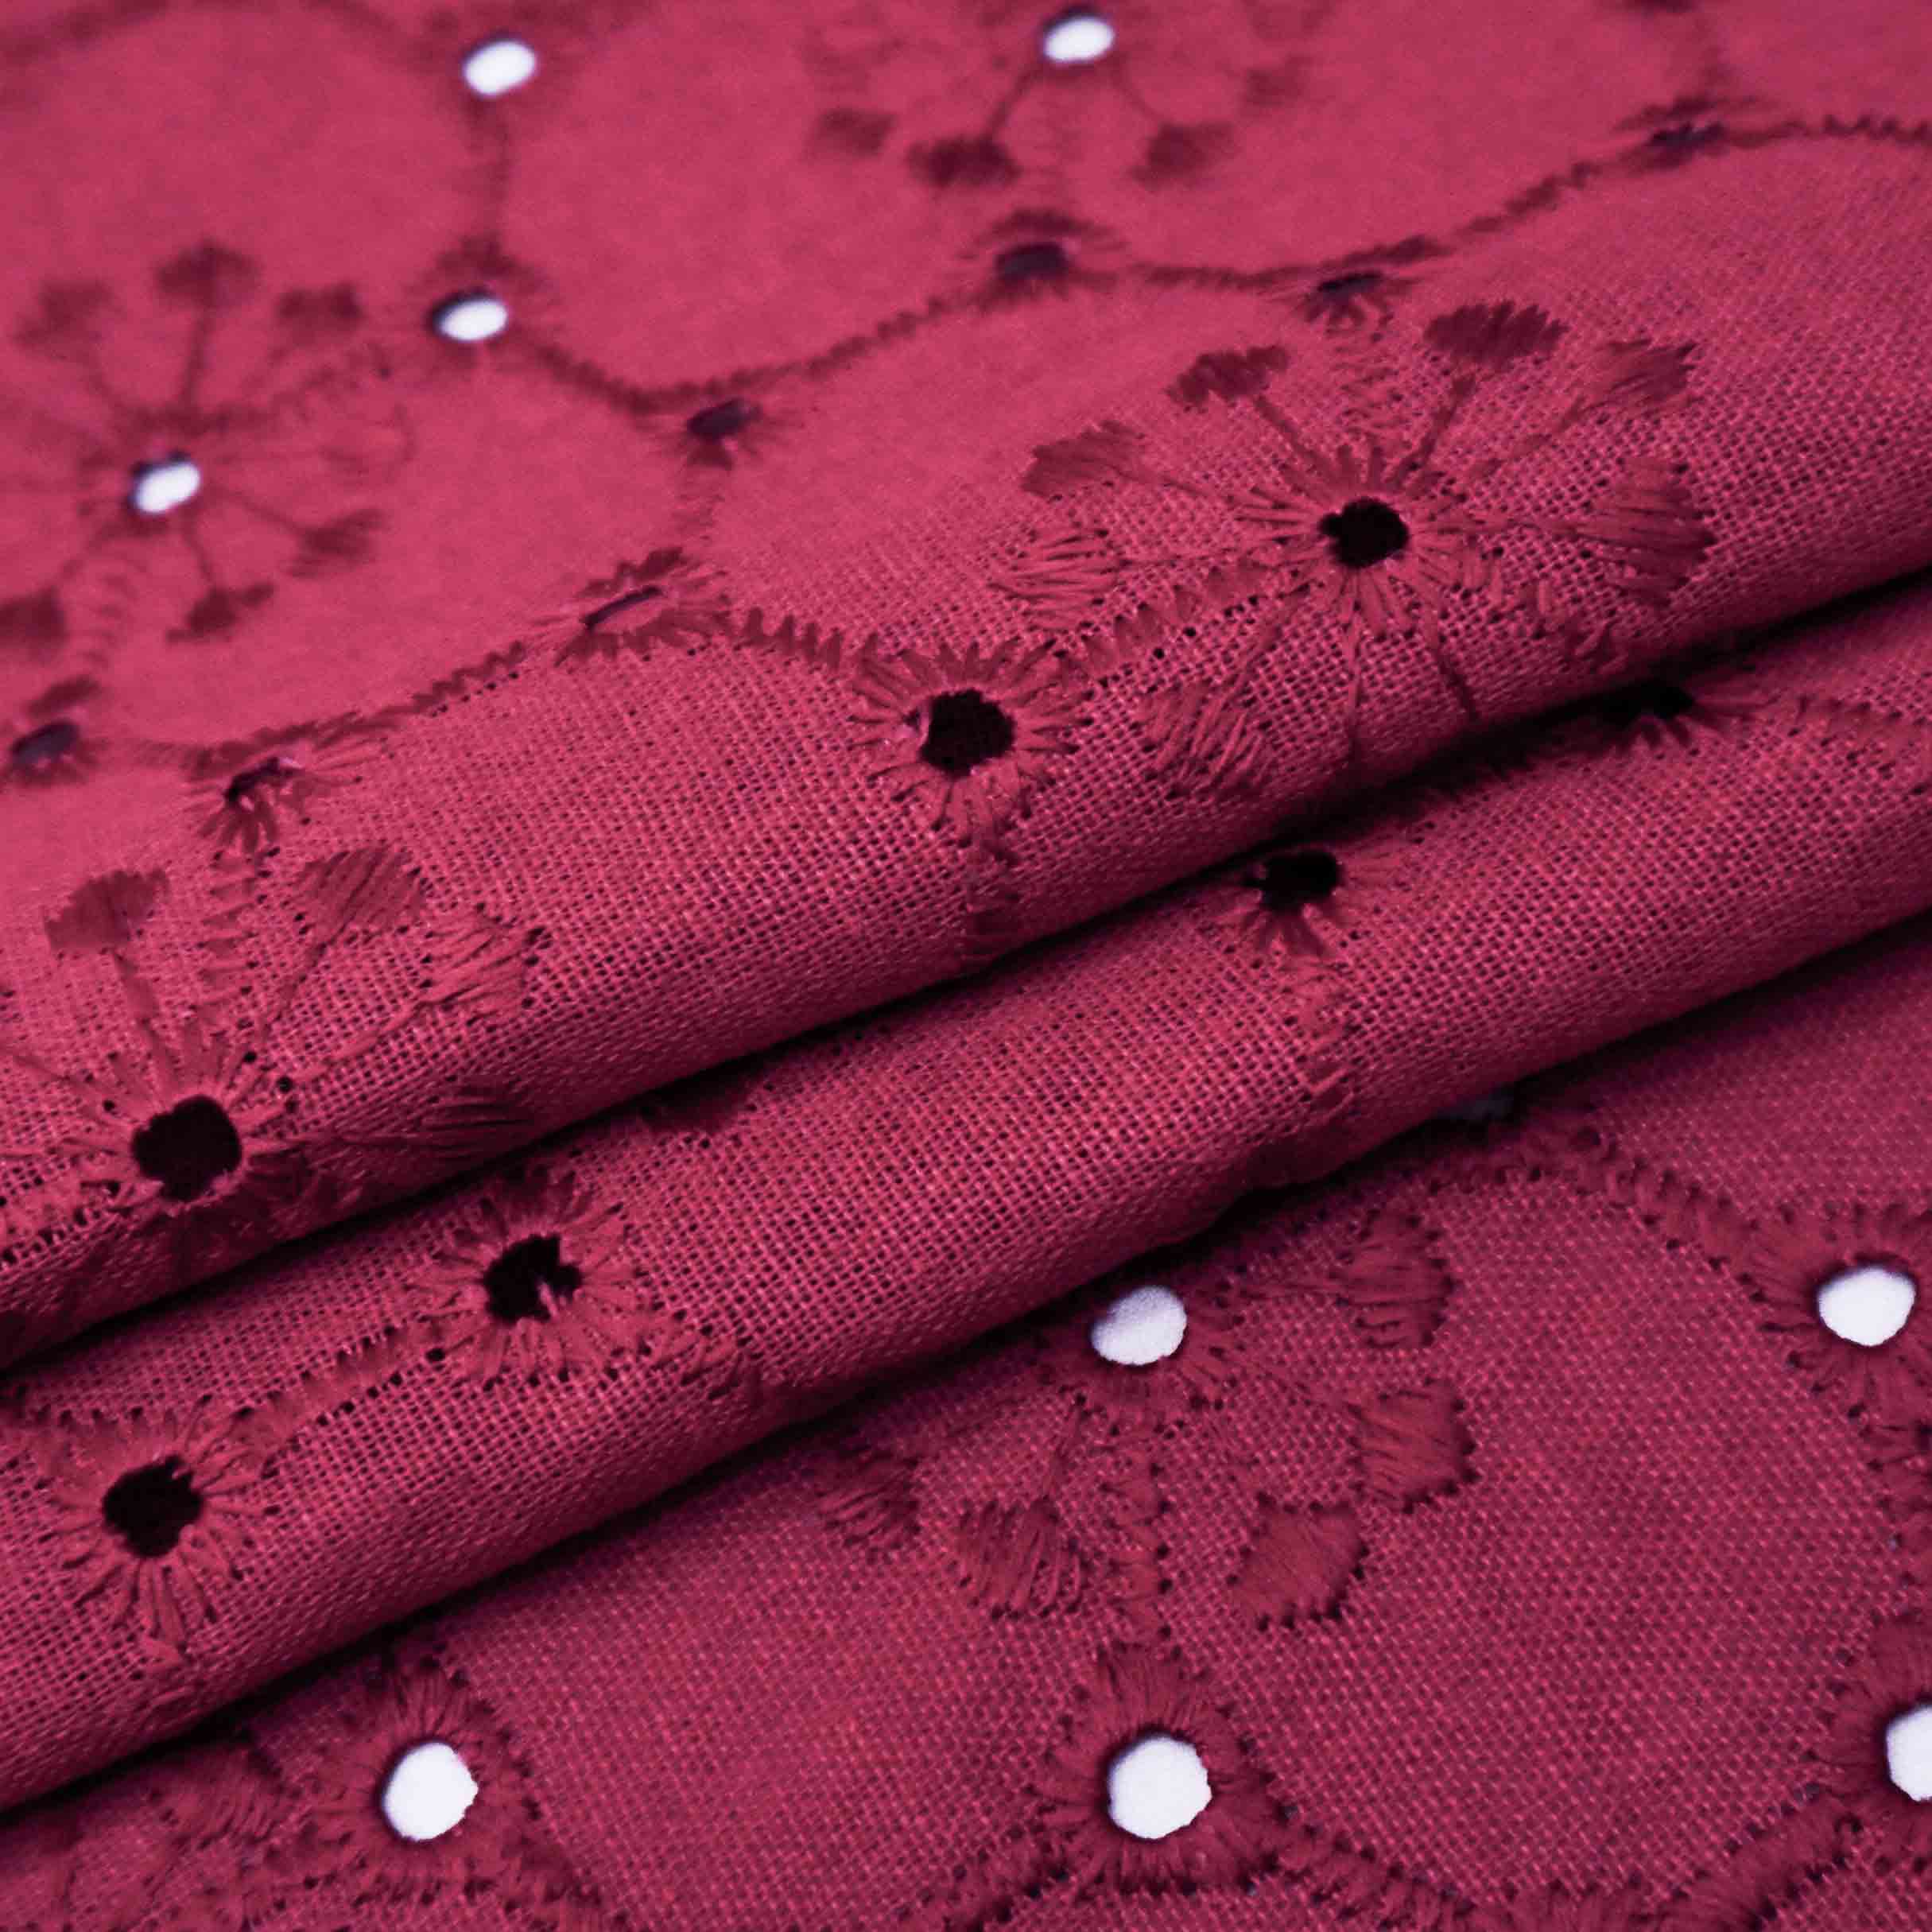 Tecido linho misto bordado (laise) pink